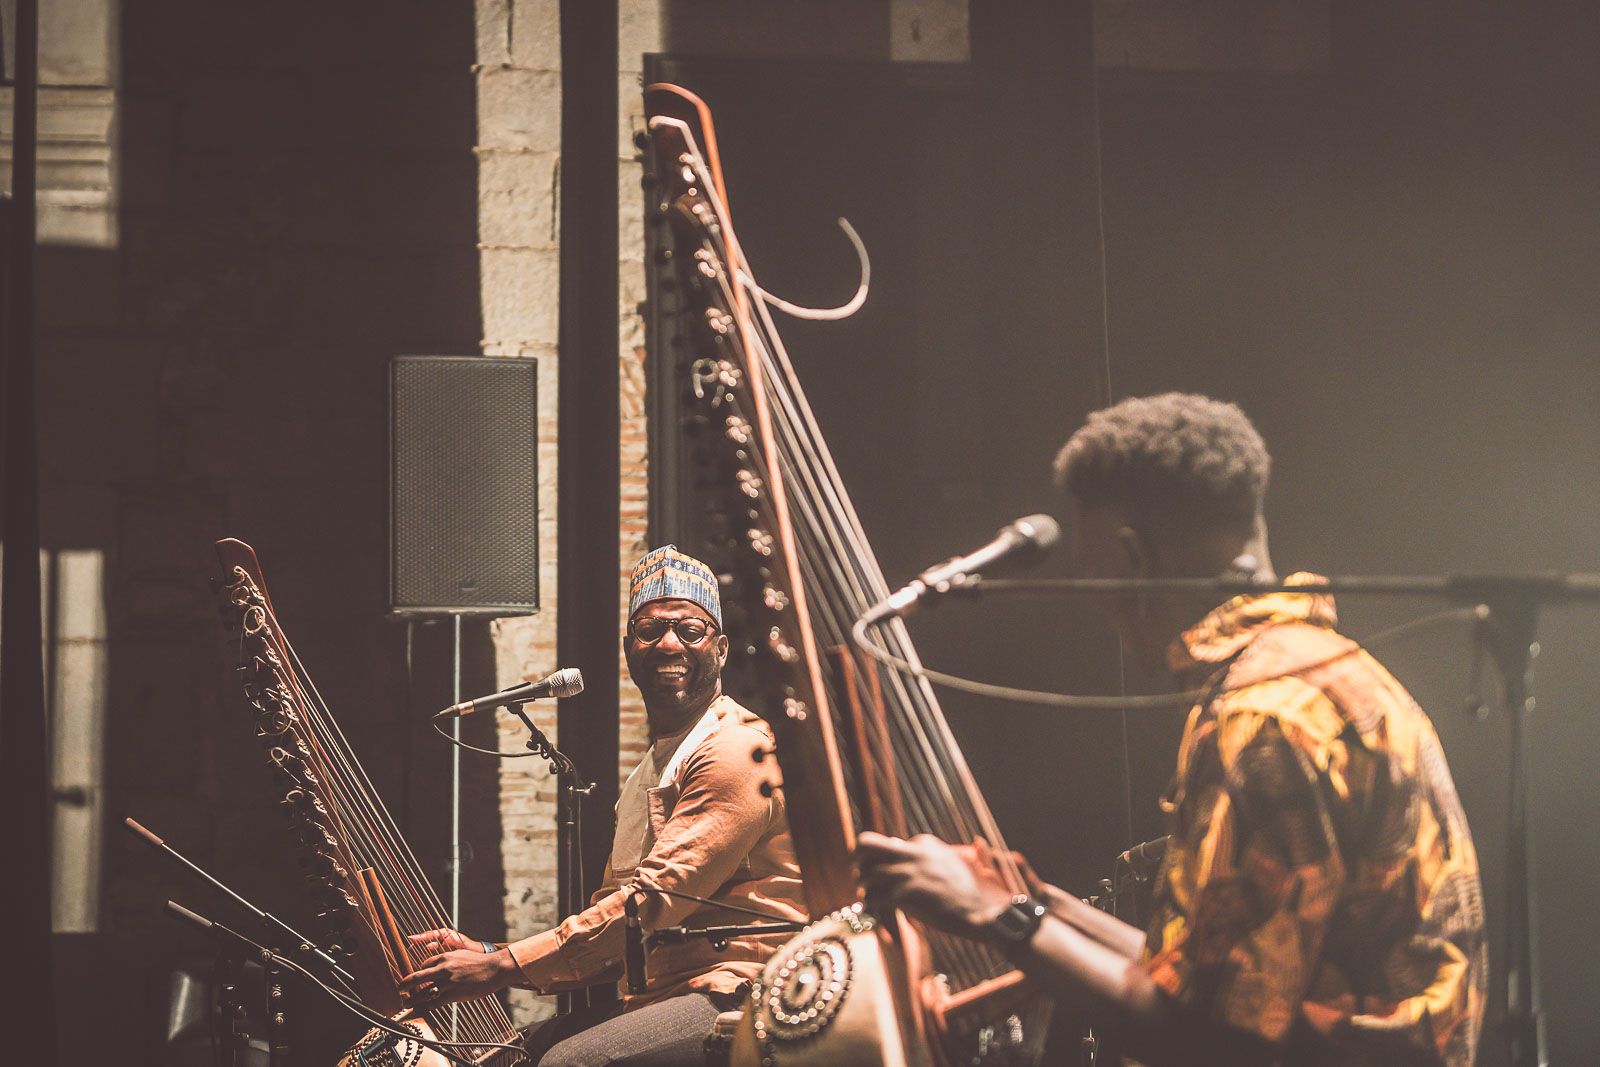 Momi Maiga i Seckou Keita fan lluir el llegat de la kora al Black Music Festival